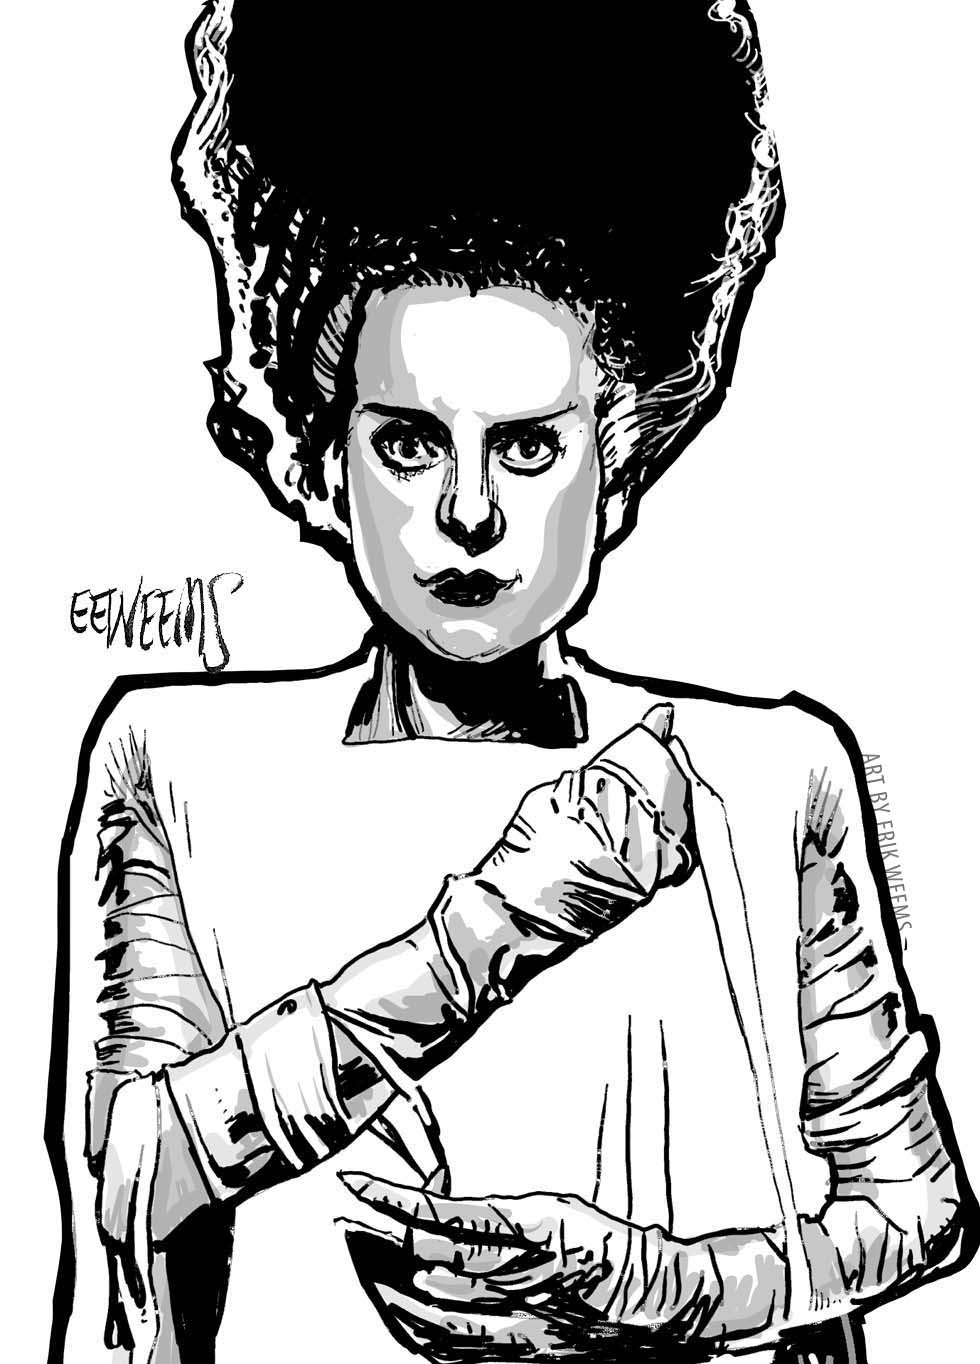 The Bride of Frankenstein - Lanchester